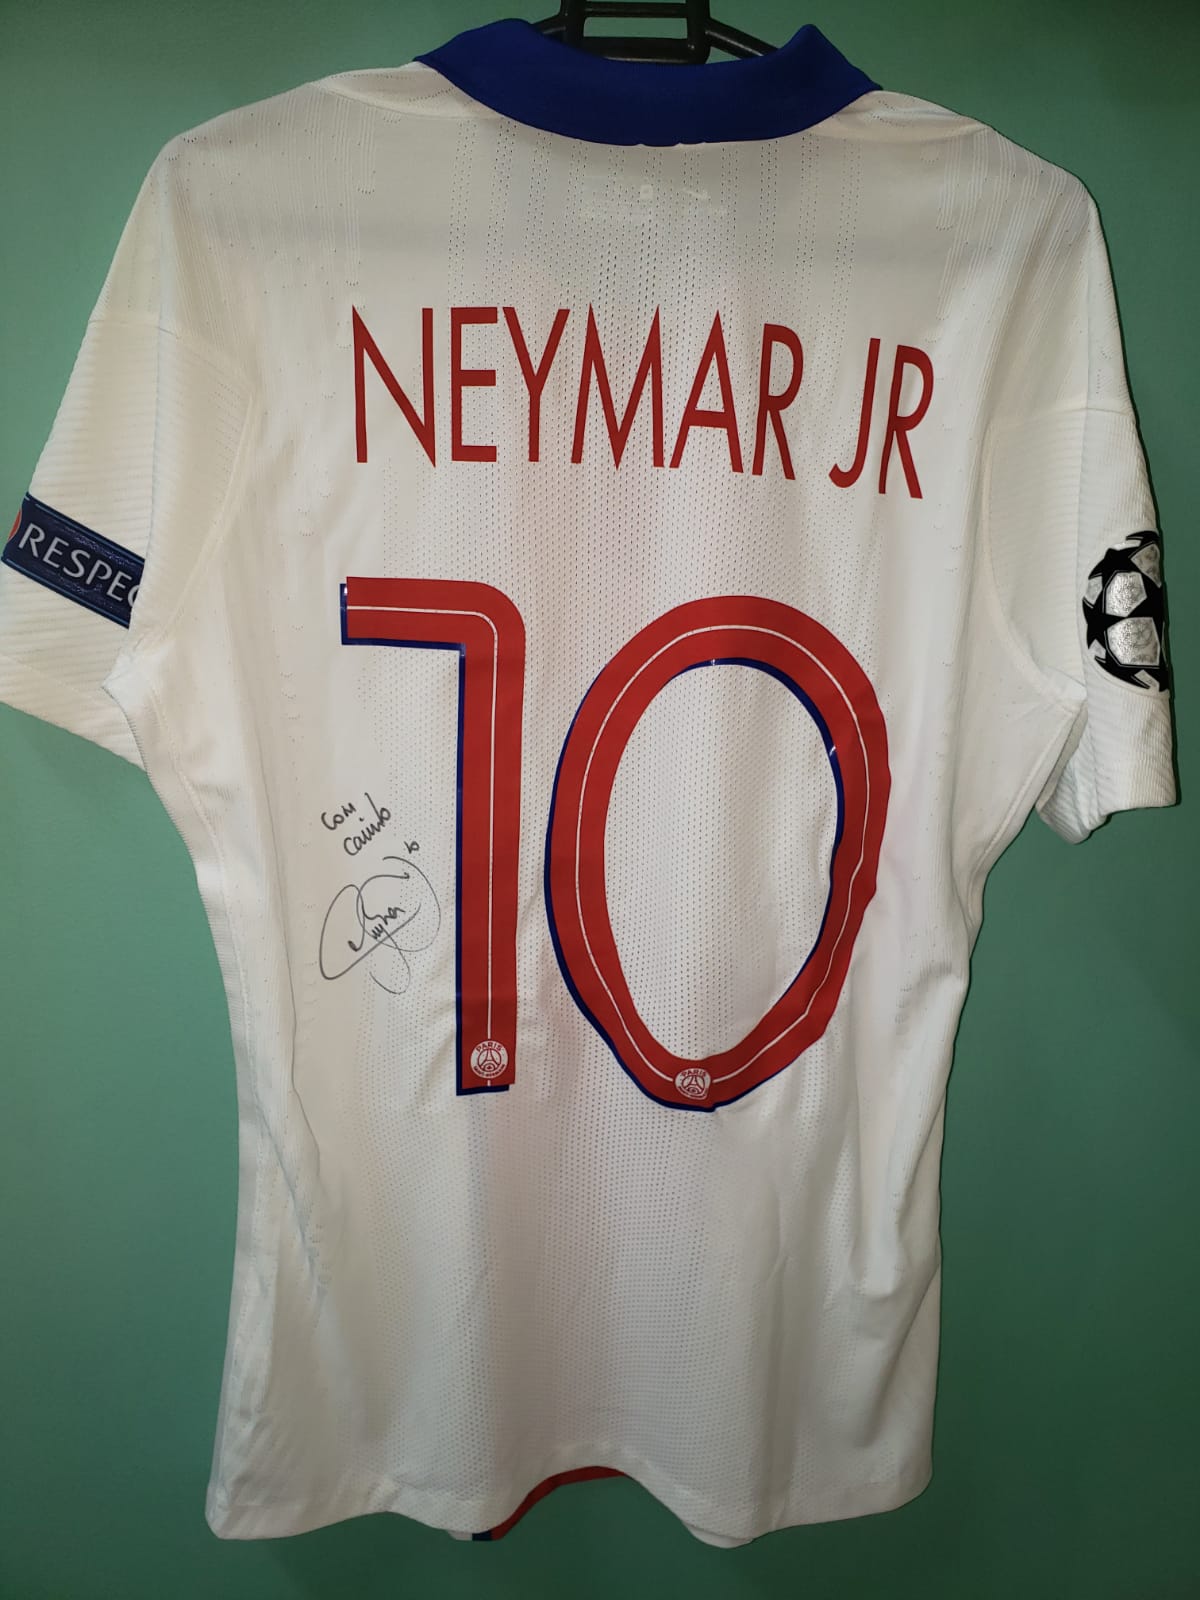 Ação entre Amigos – Camisa Oficial do Neymar Jr